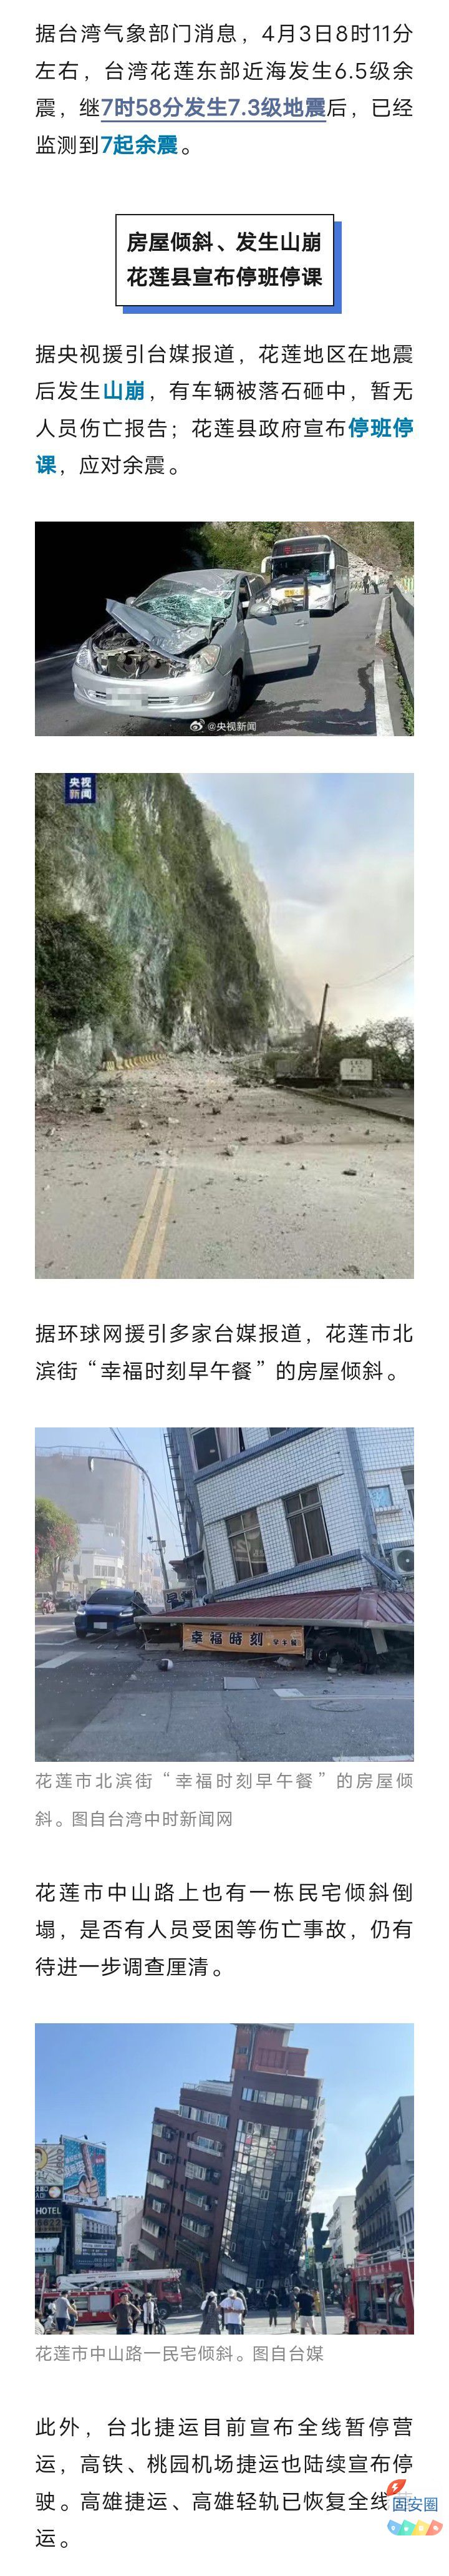 房屋倾斜、山崩，停班停课停运！台湾花莲已监测到7起余震，地震成因——9608 作者:乁沙漠 帖子ID:297903 